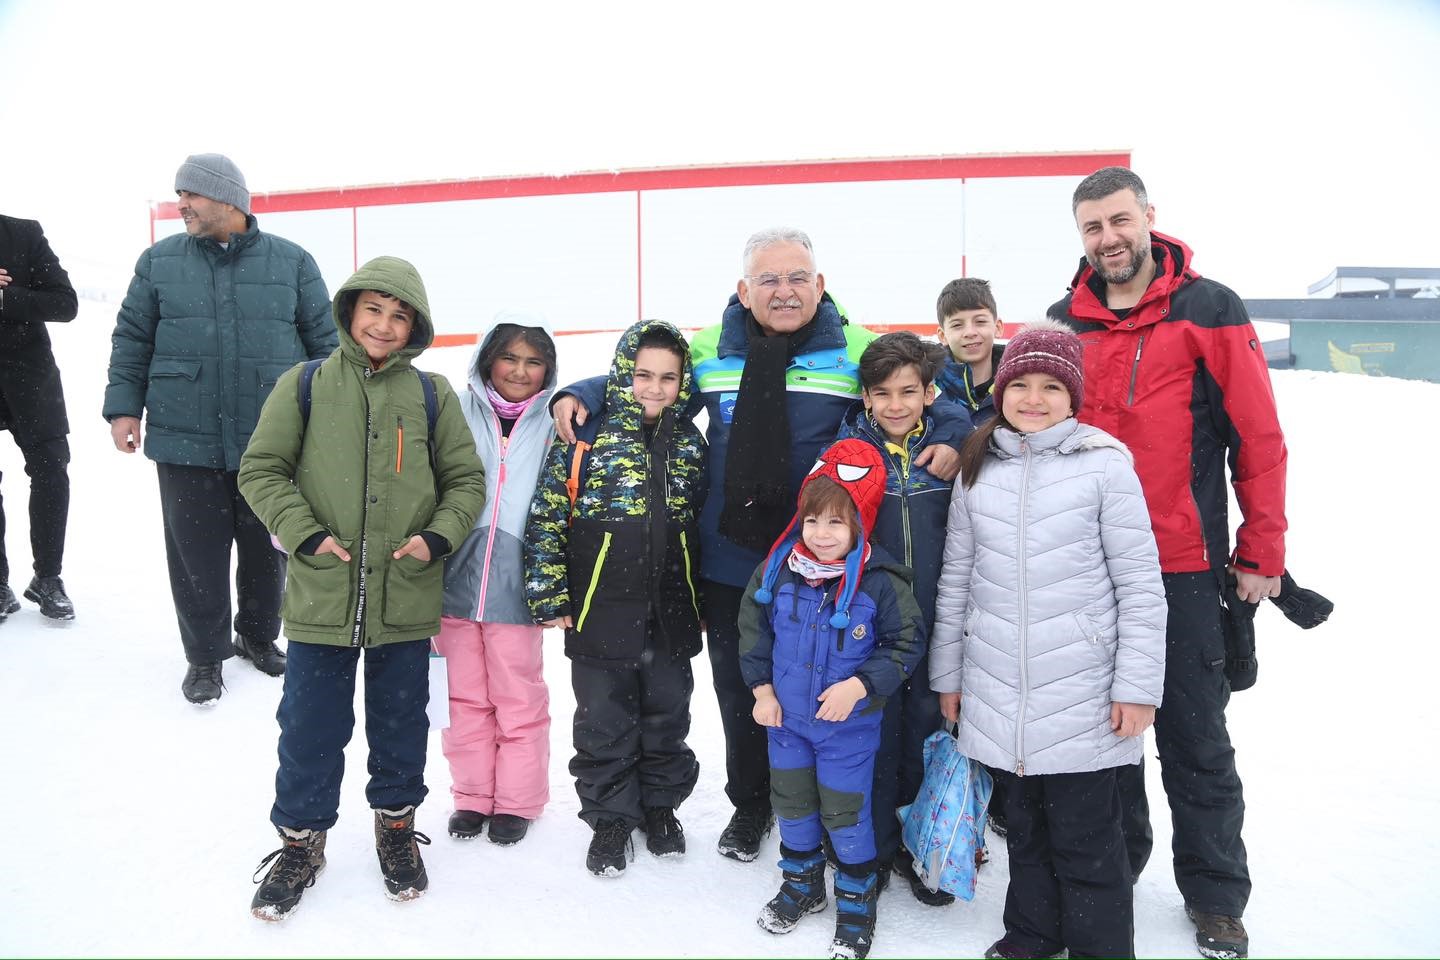 Başkan Büyükkılıç: “Türkiye’nin en büyük kayak okulu Erciyes’te hizmet veriyor”